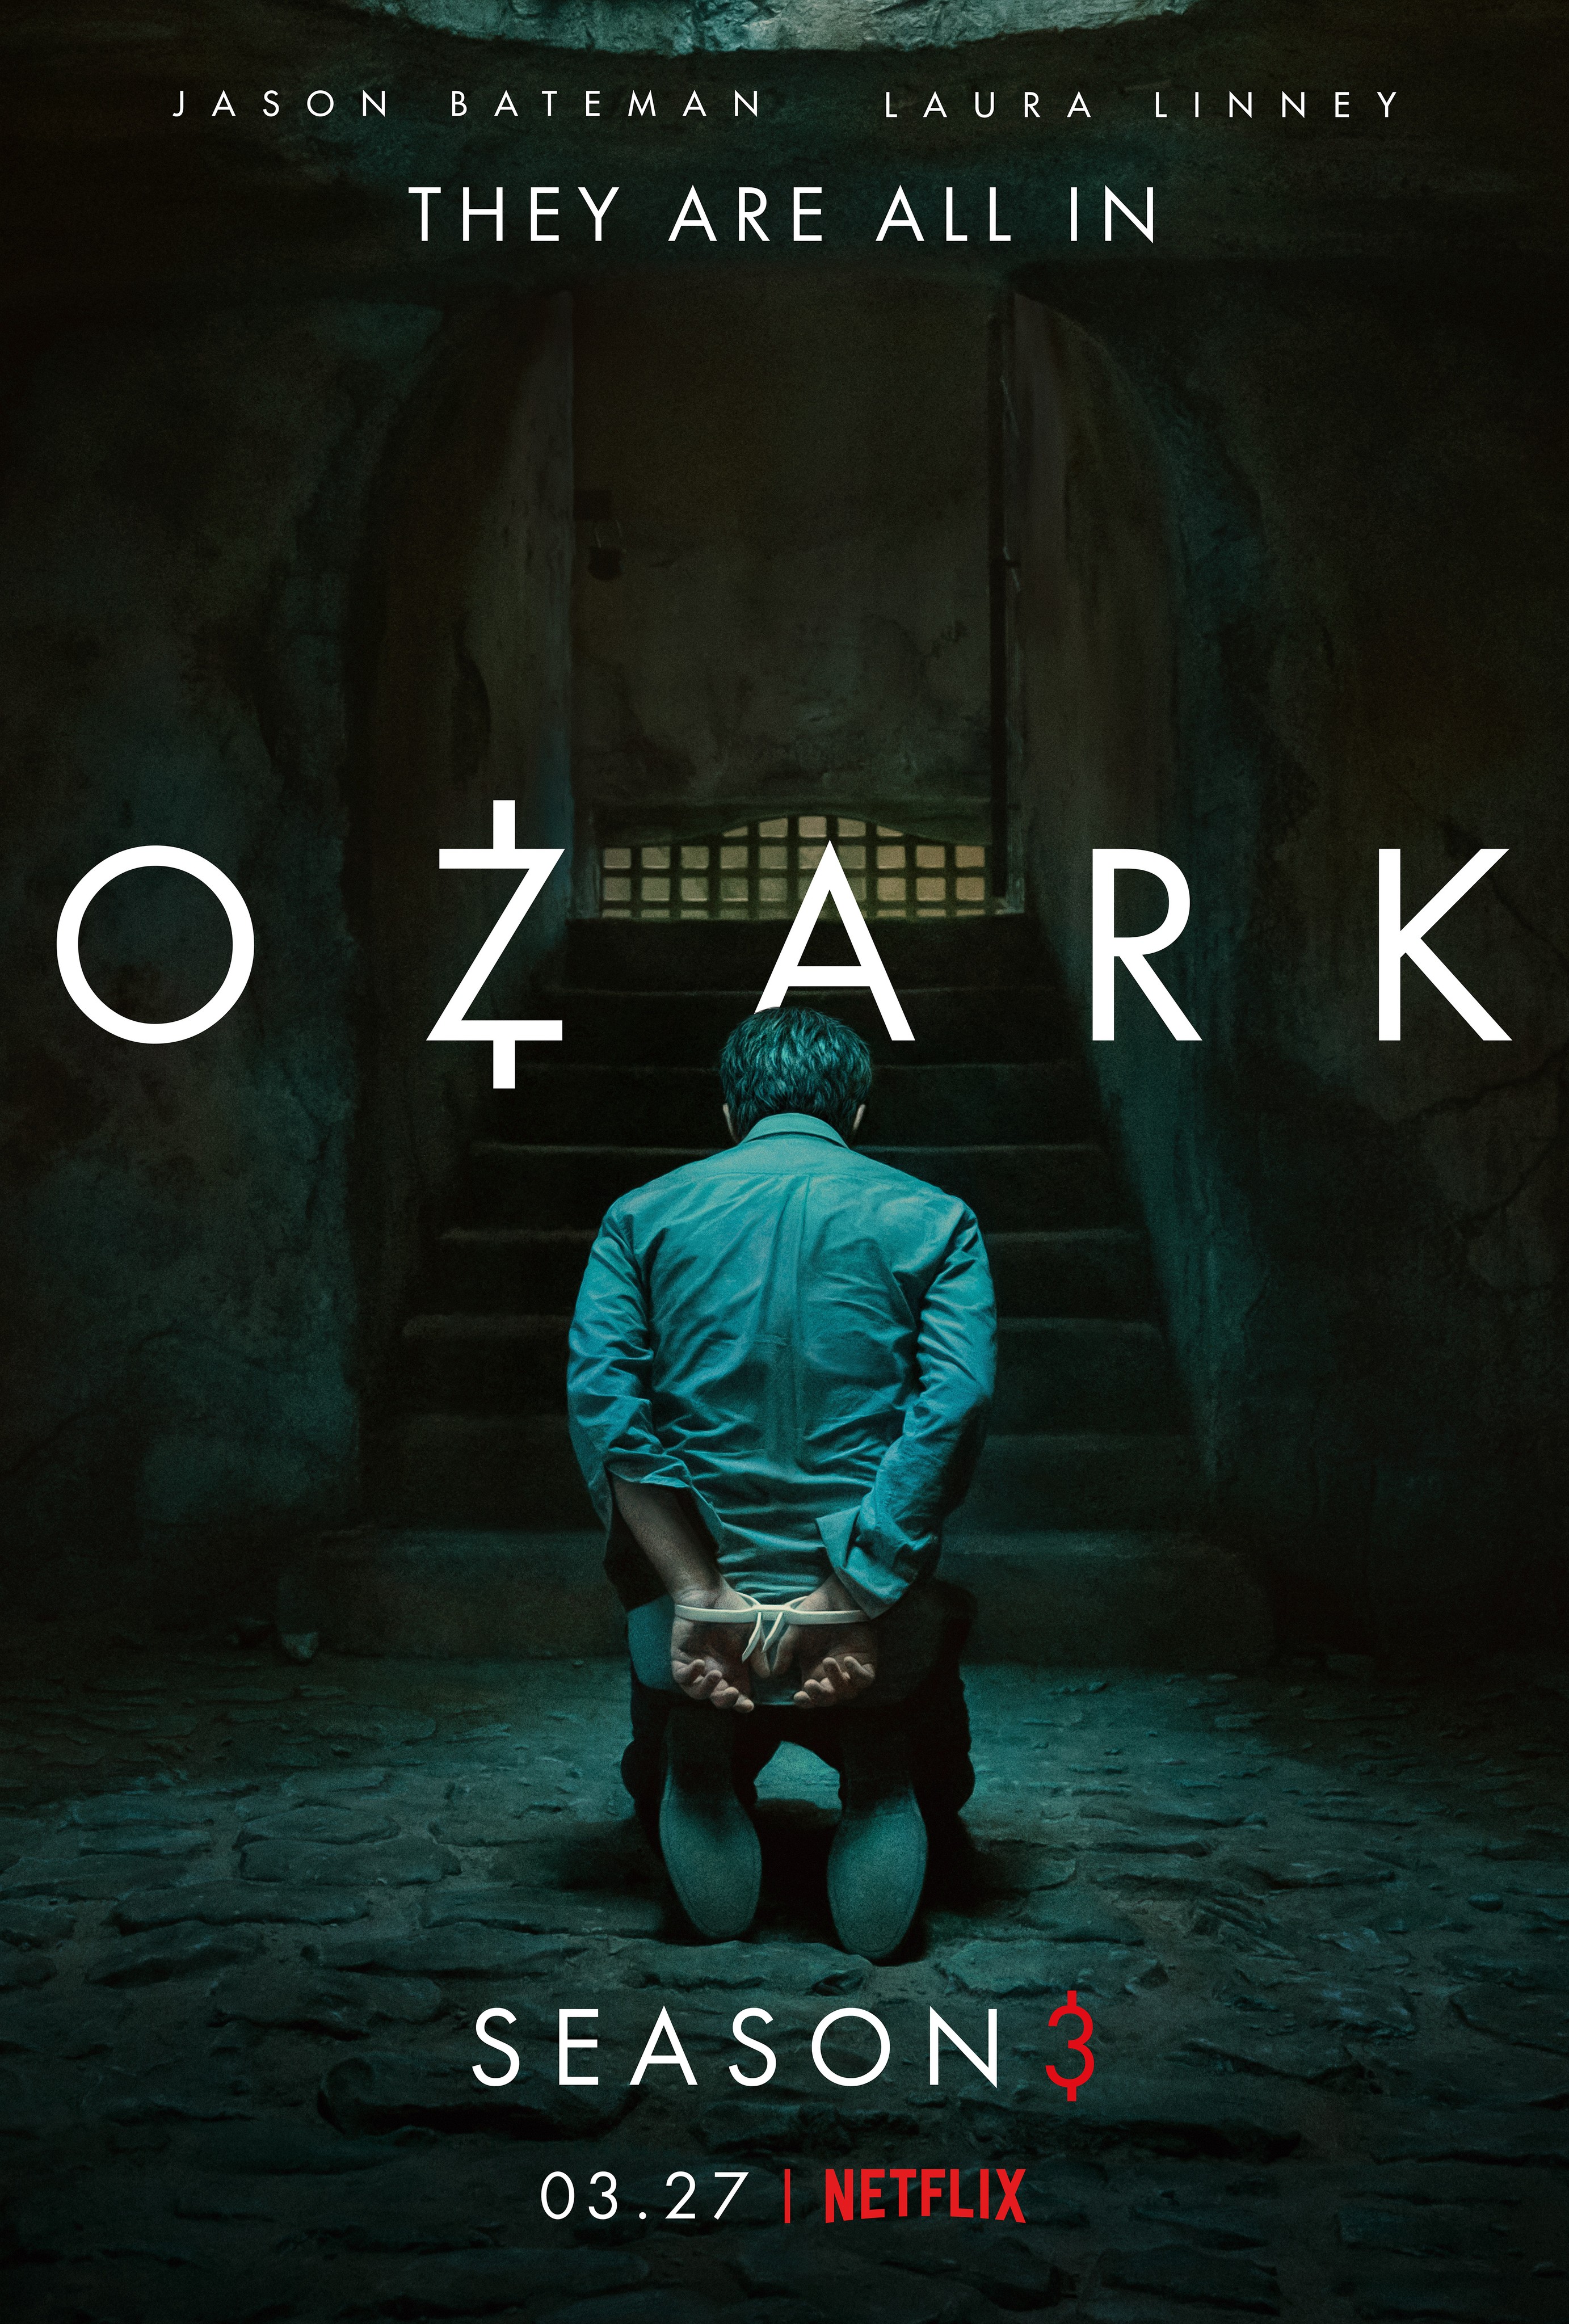 Ozark' Season 4 News, Details, Cast, Air Date - Details About